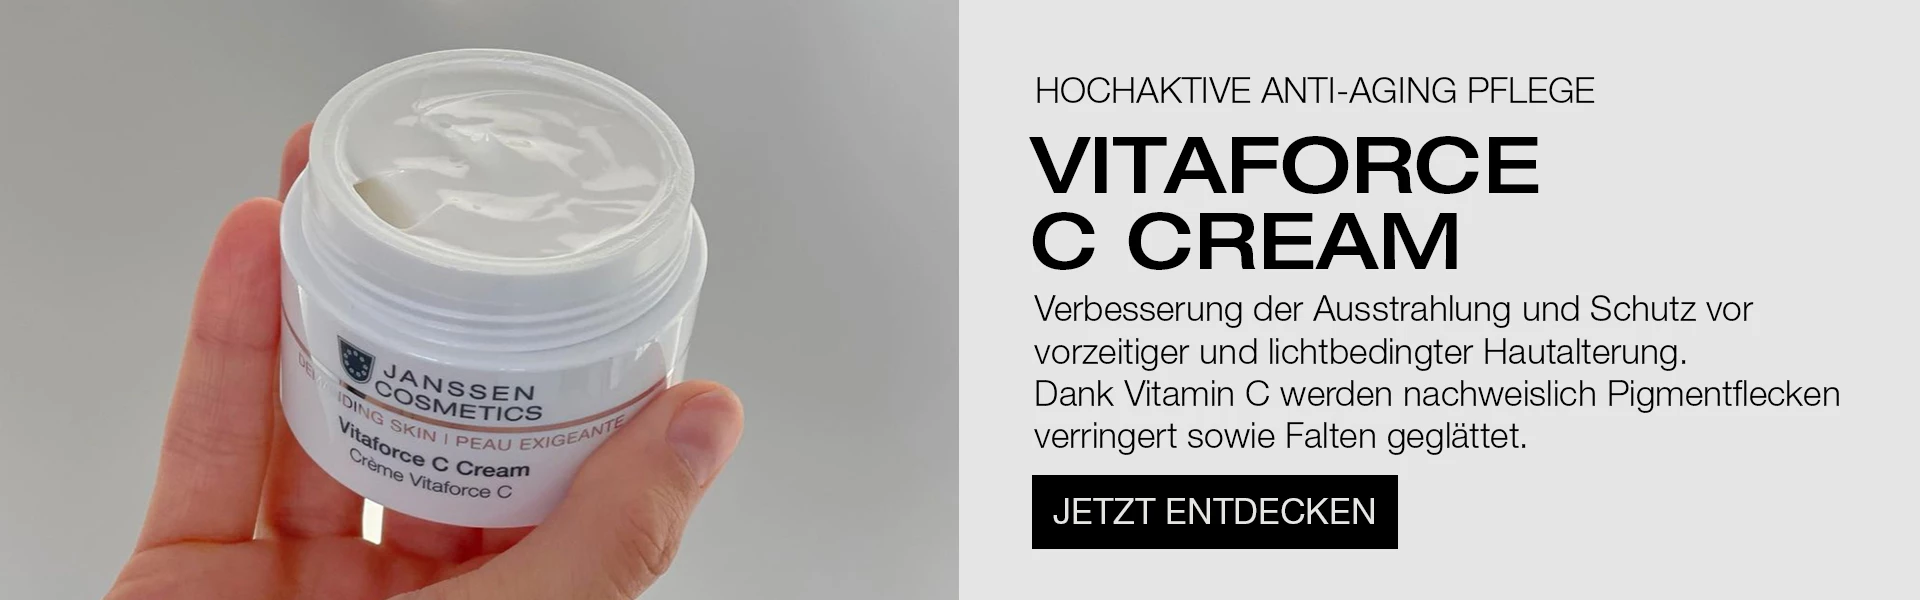 vitaforce c cream